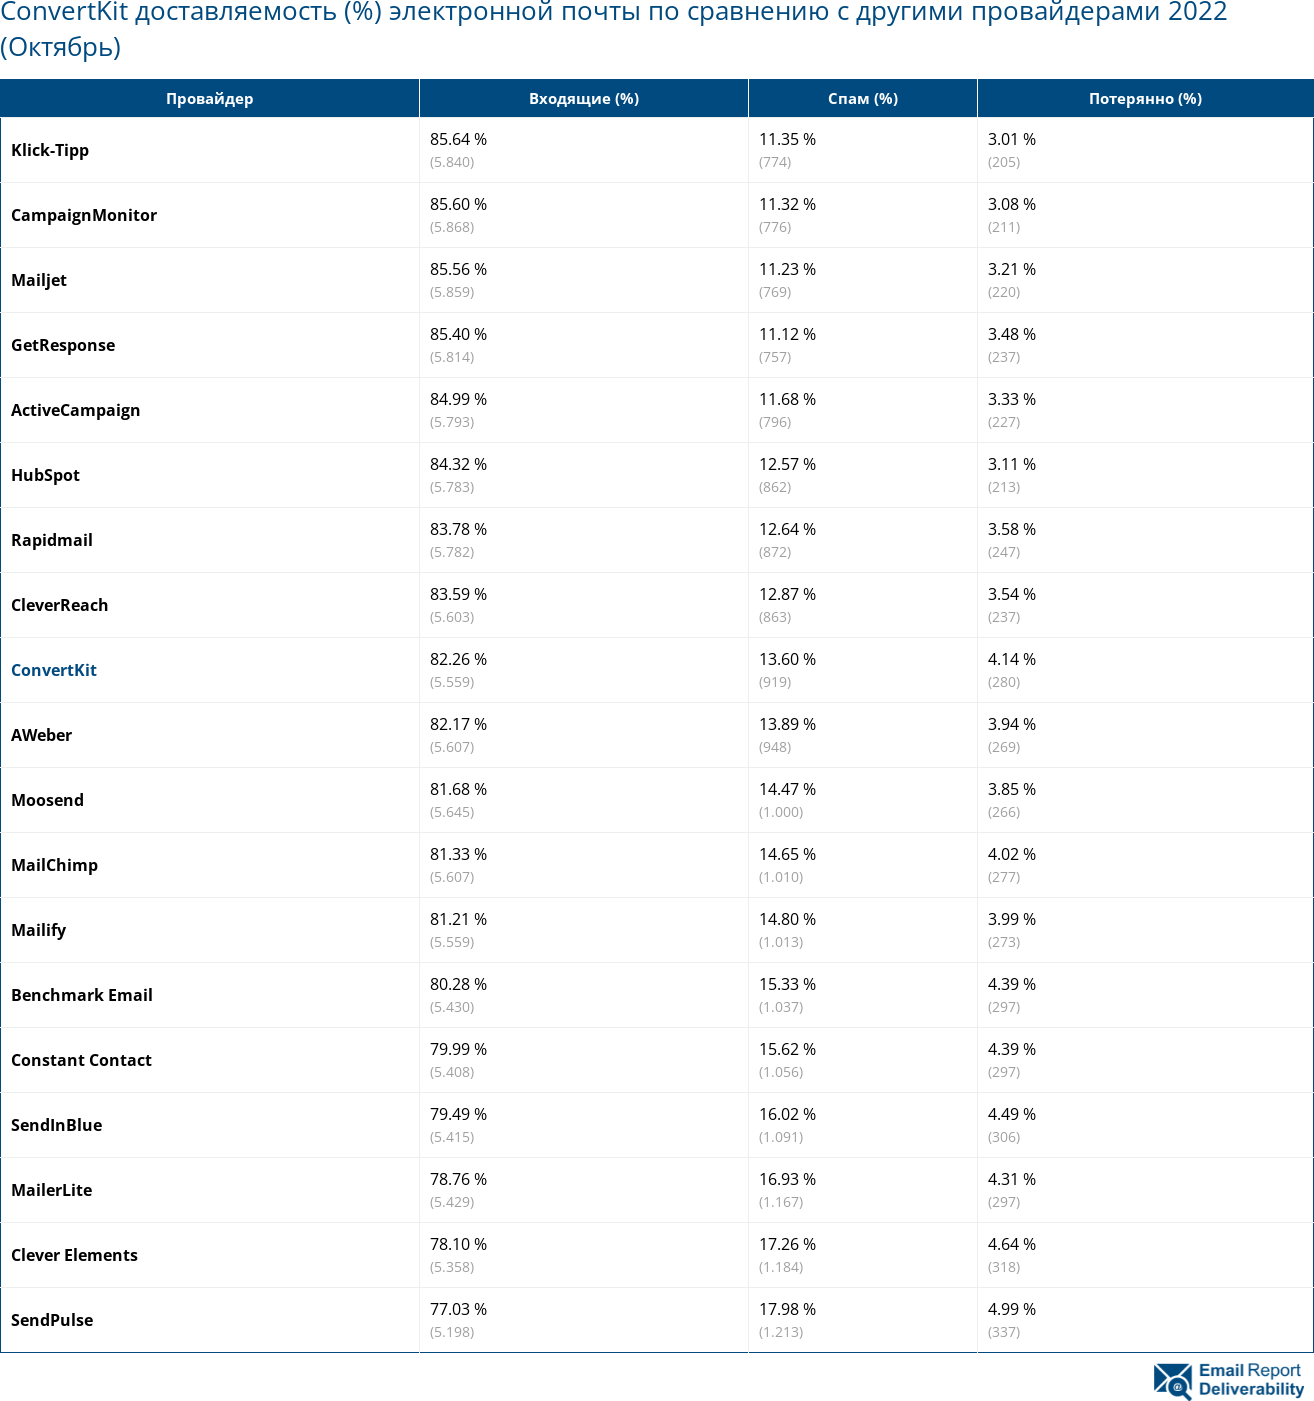 ConvertKit доставляемость (%) электронной почты по сравнению с другими провайдерами 2022 (Октябрь)